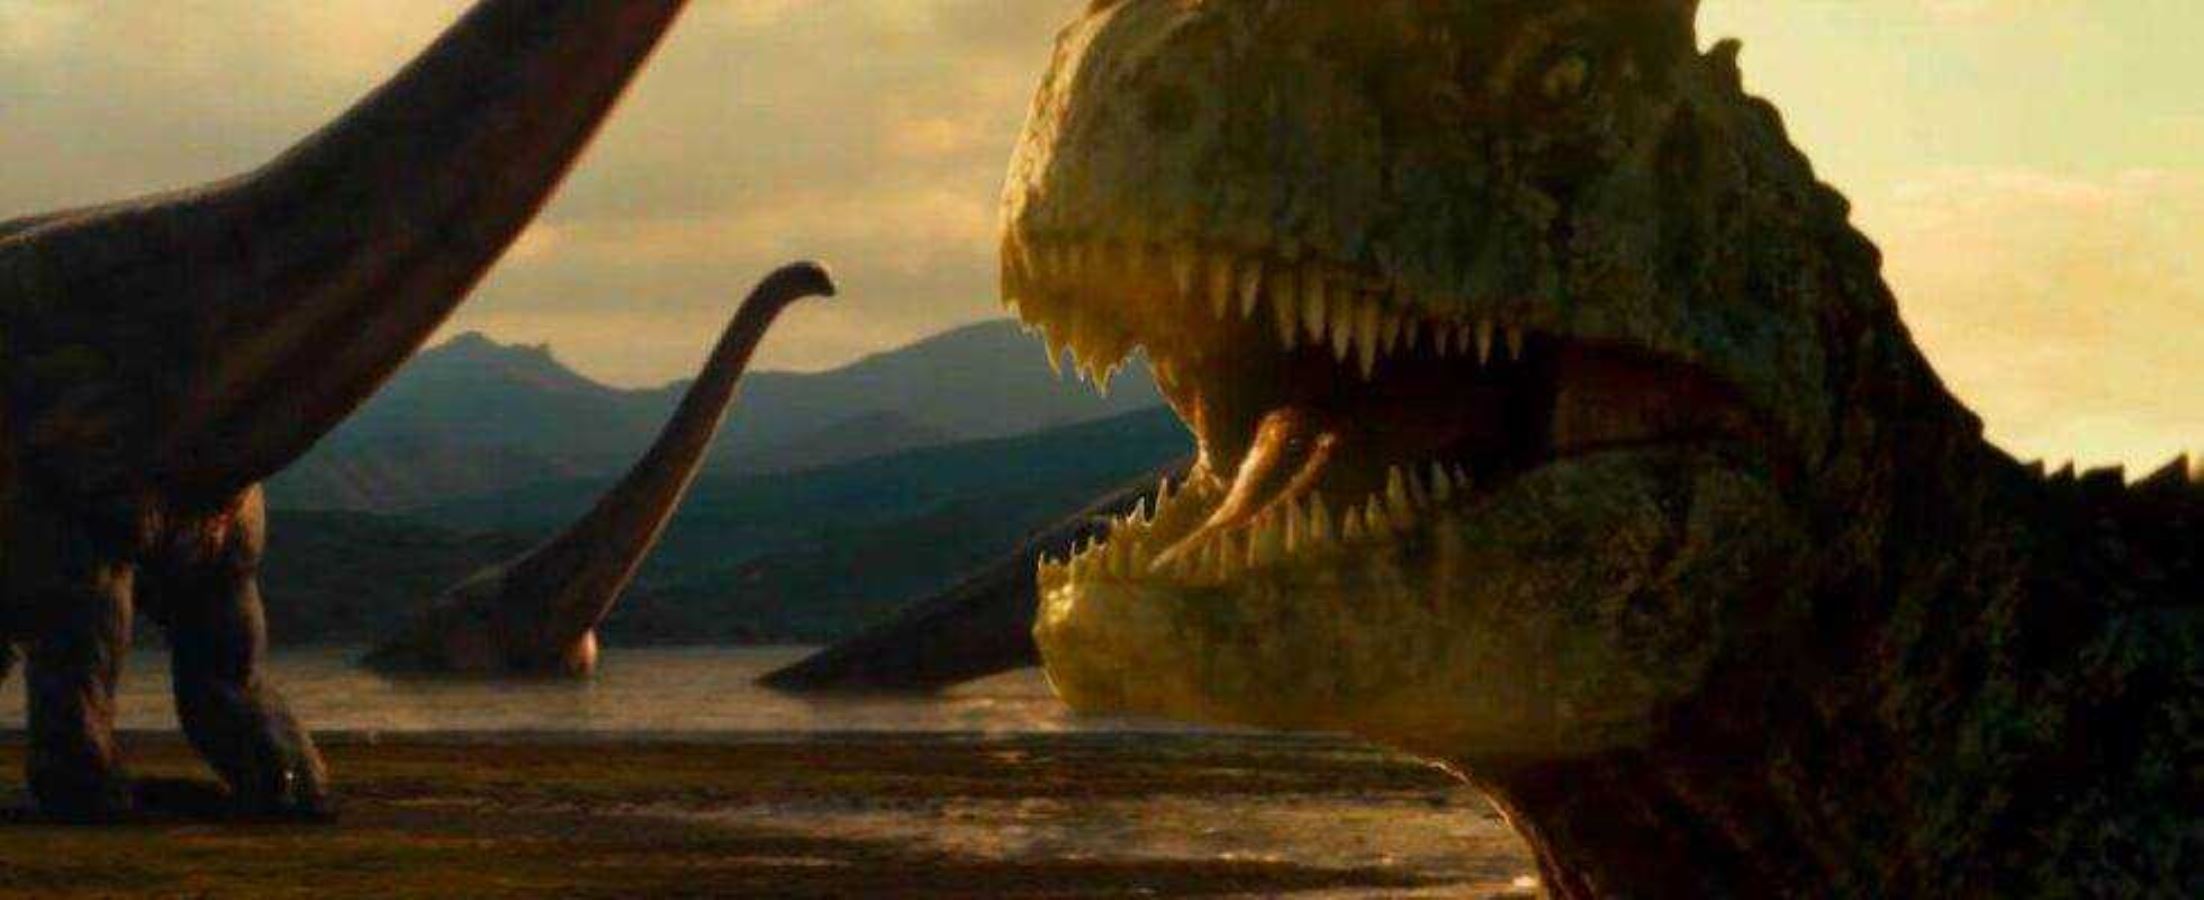 Мир динозавров 3. Динозавры мир Юрского периода 3. Юрский парк 2022. Giganotosaurus Jurassic World 3 Dominion 2022. Гигантозавр мир Юрского периода 3.